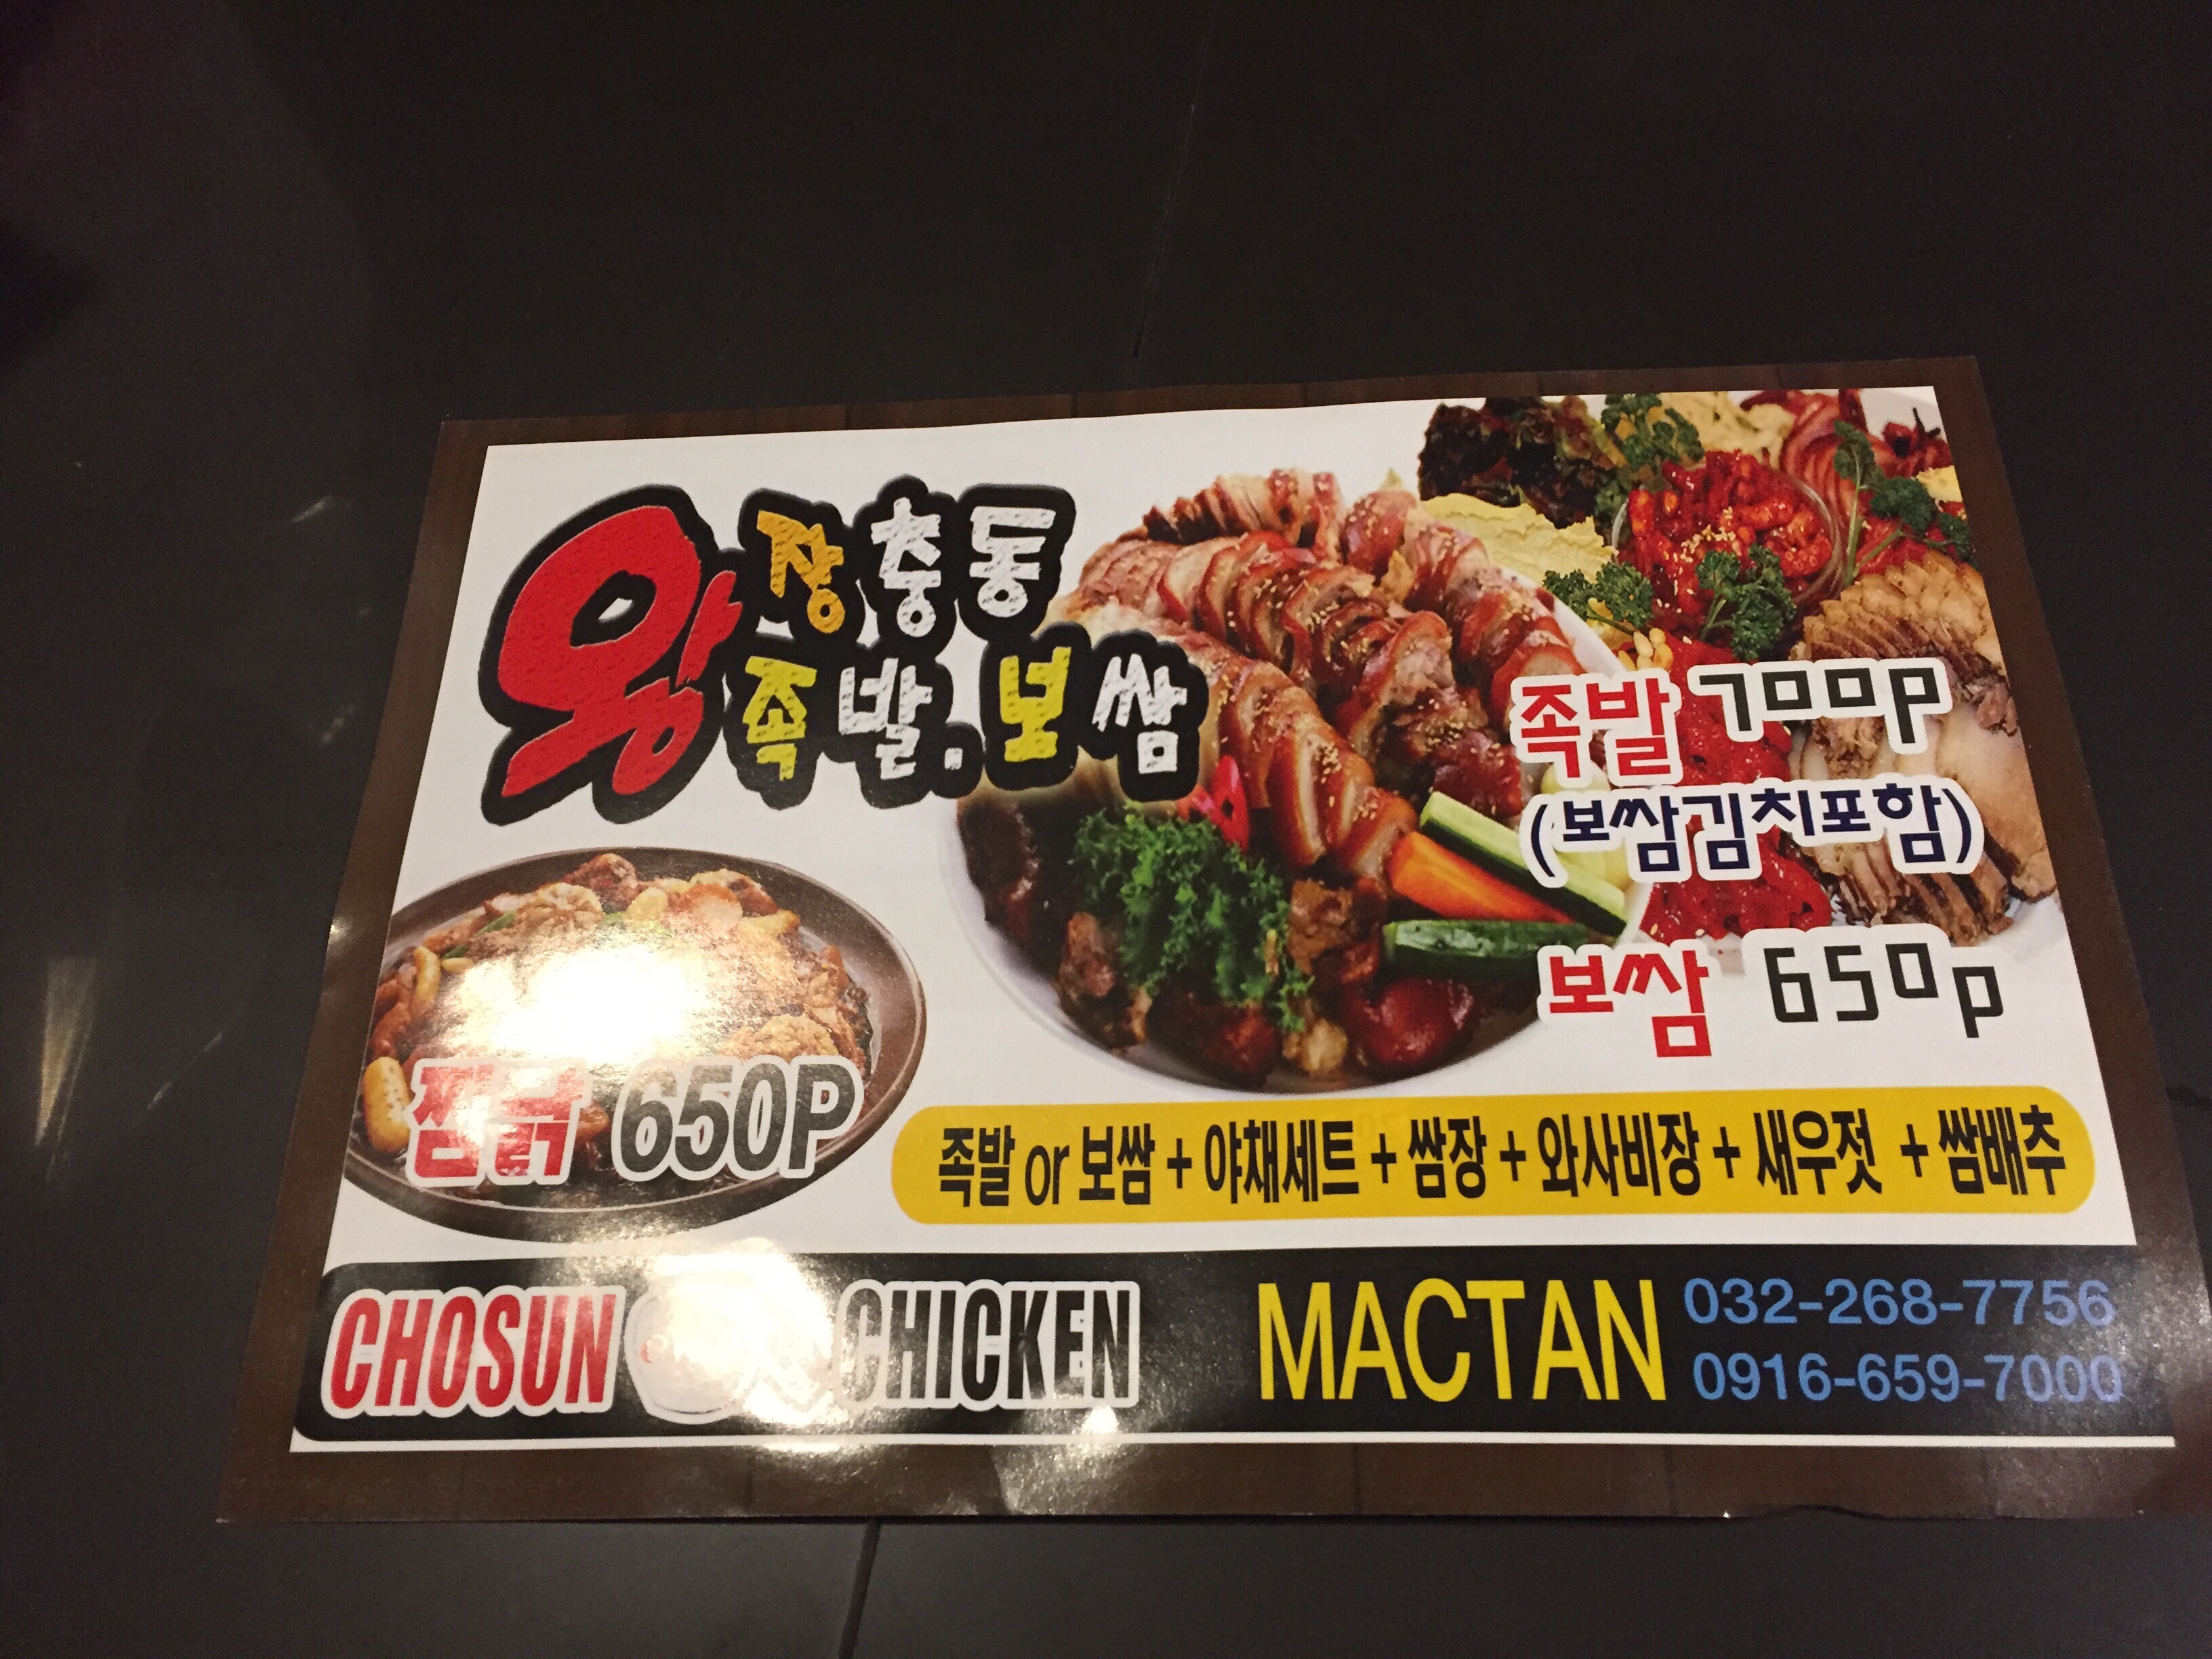 セブ島・チョーセンチキン/Chosun Chicken